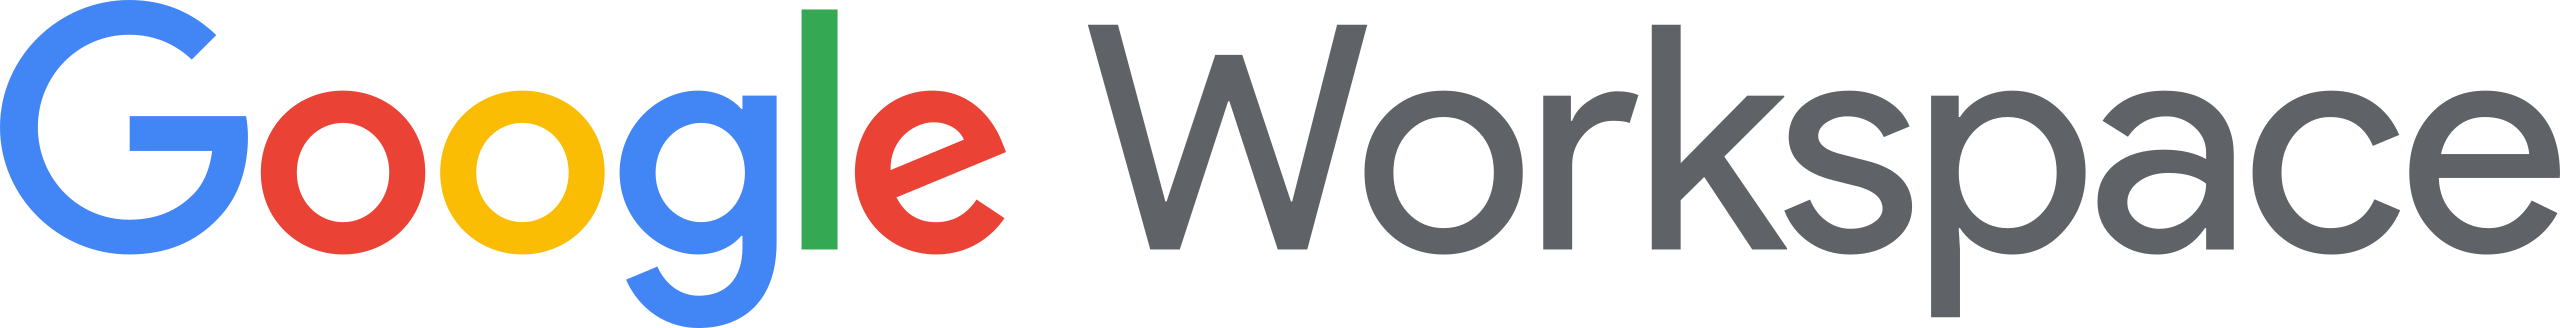 Google Workspace Logo.svg 1.png